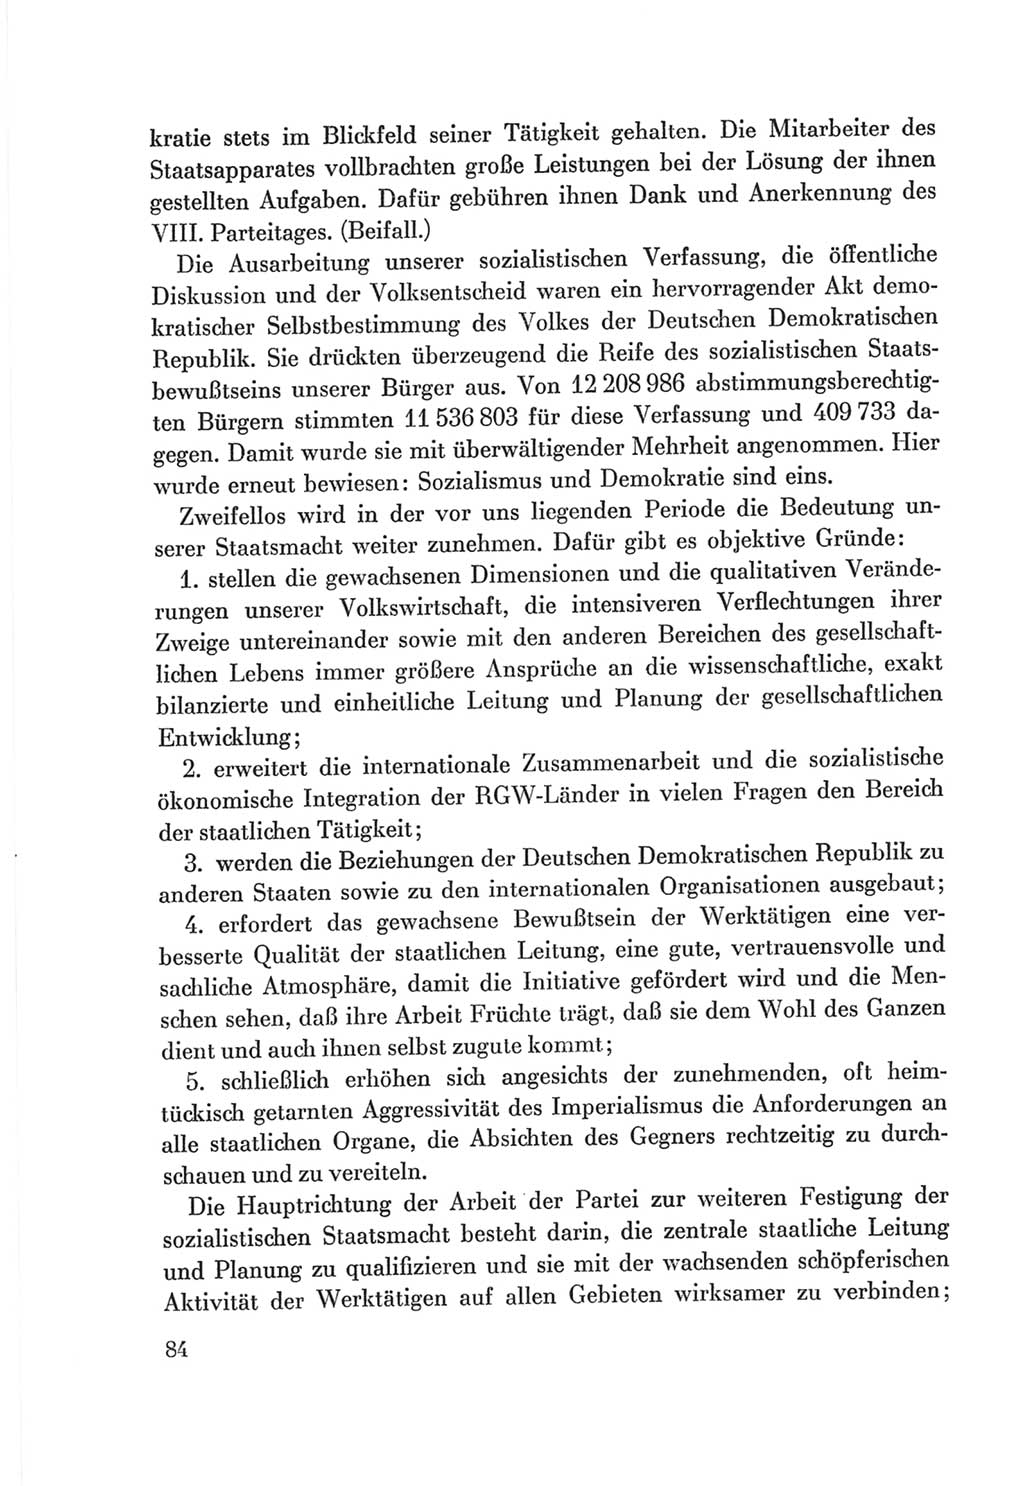 Protokoll der Verhandlungen des Ⅷ. Parteitages der Sozialistischen Einheitspartei Deutschlands (SED) [Deutsche Demokratische Republik (DDR)] 1971, Band 1, Seite 84 (Prot. Verh. Ⅷ. PT SED DDR 1971, Bd. 1, S. 84)